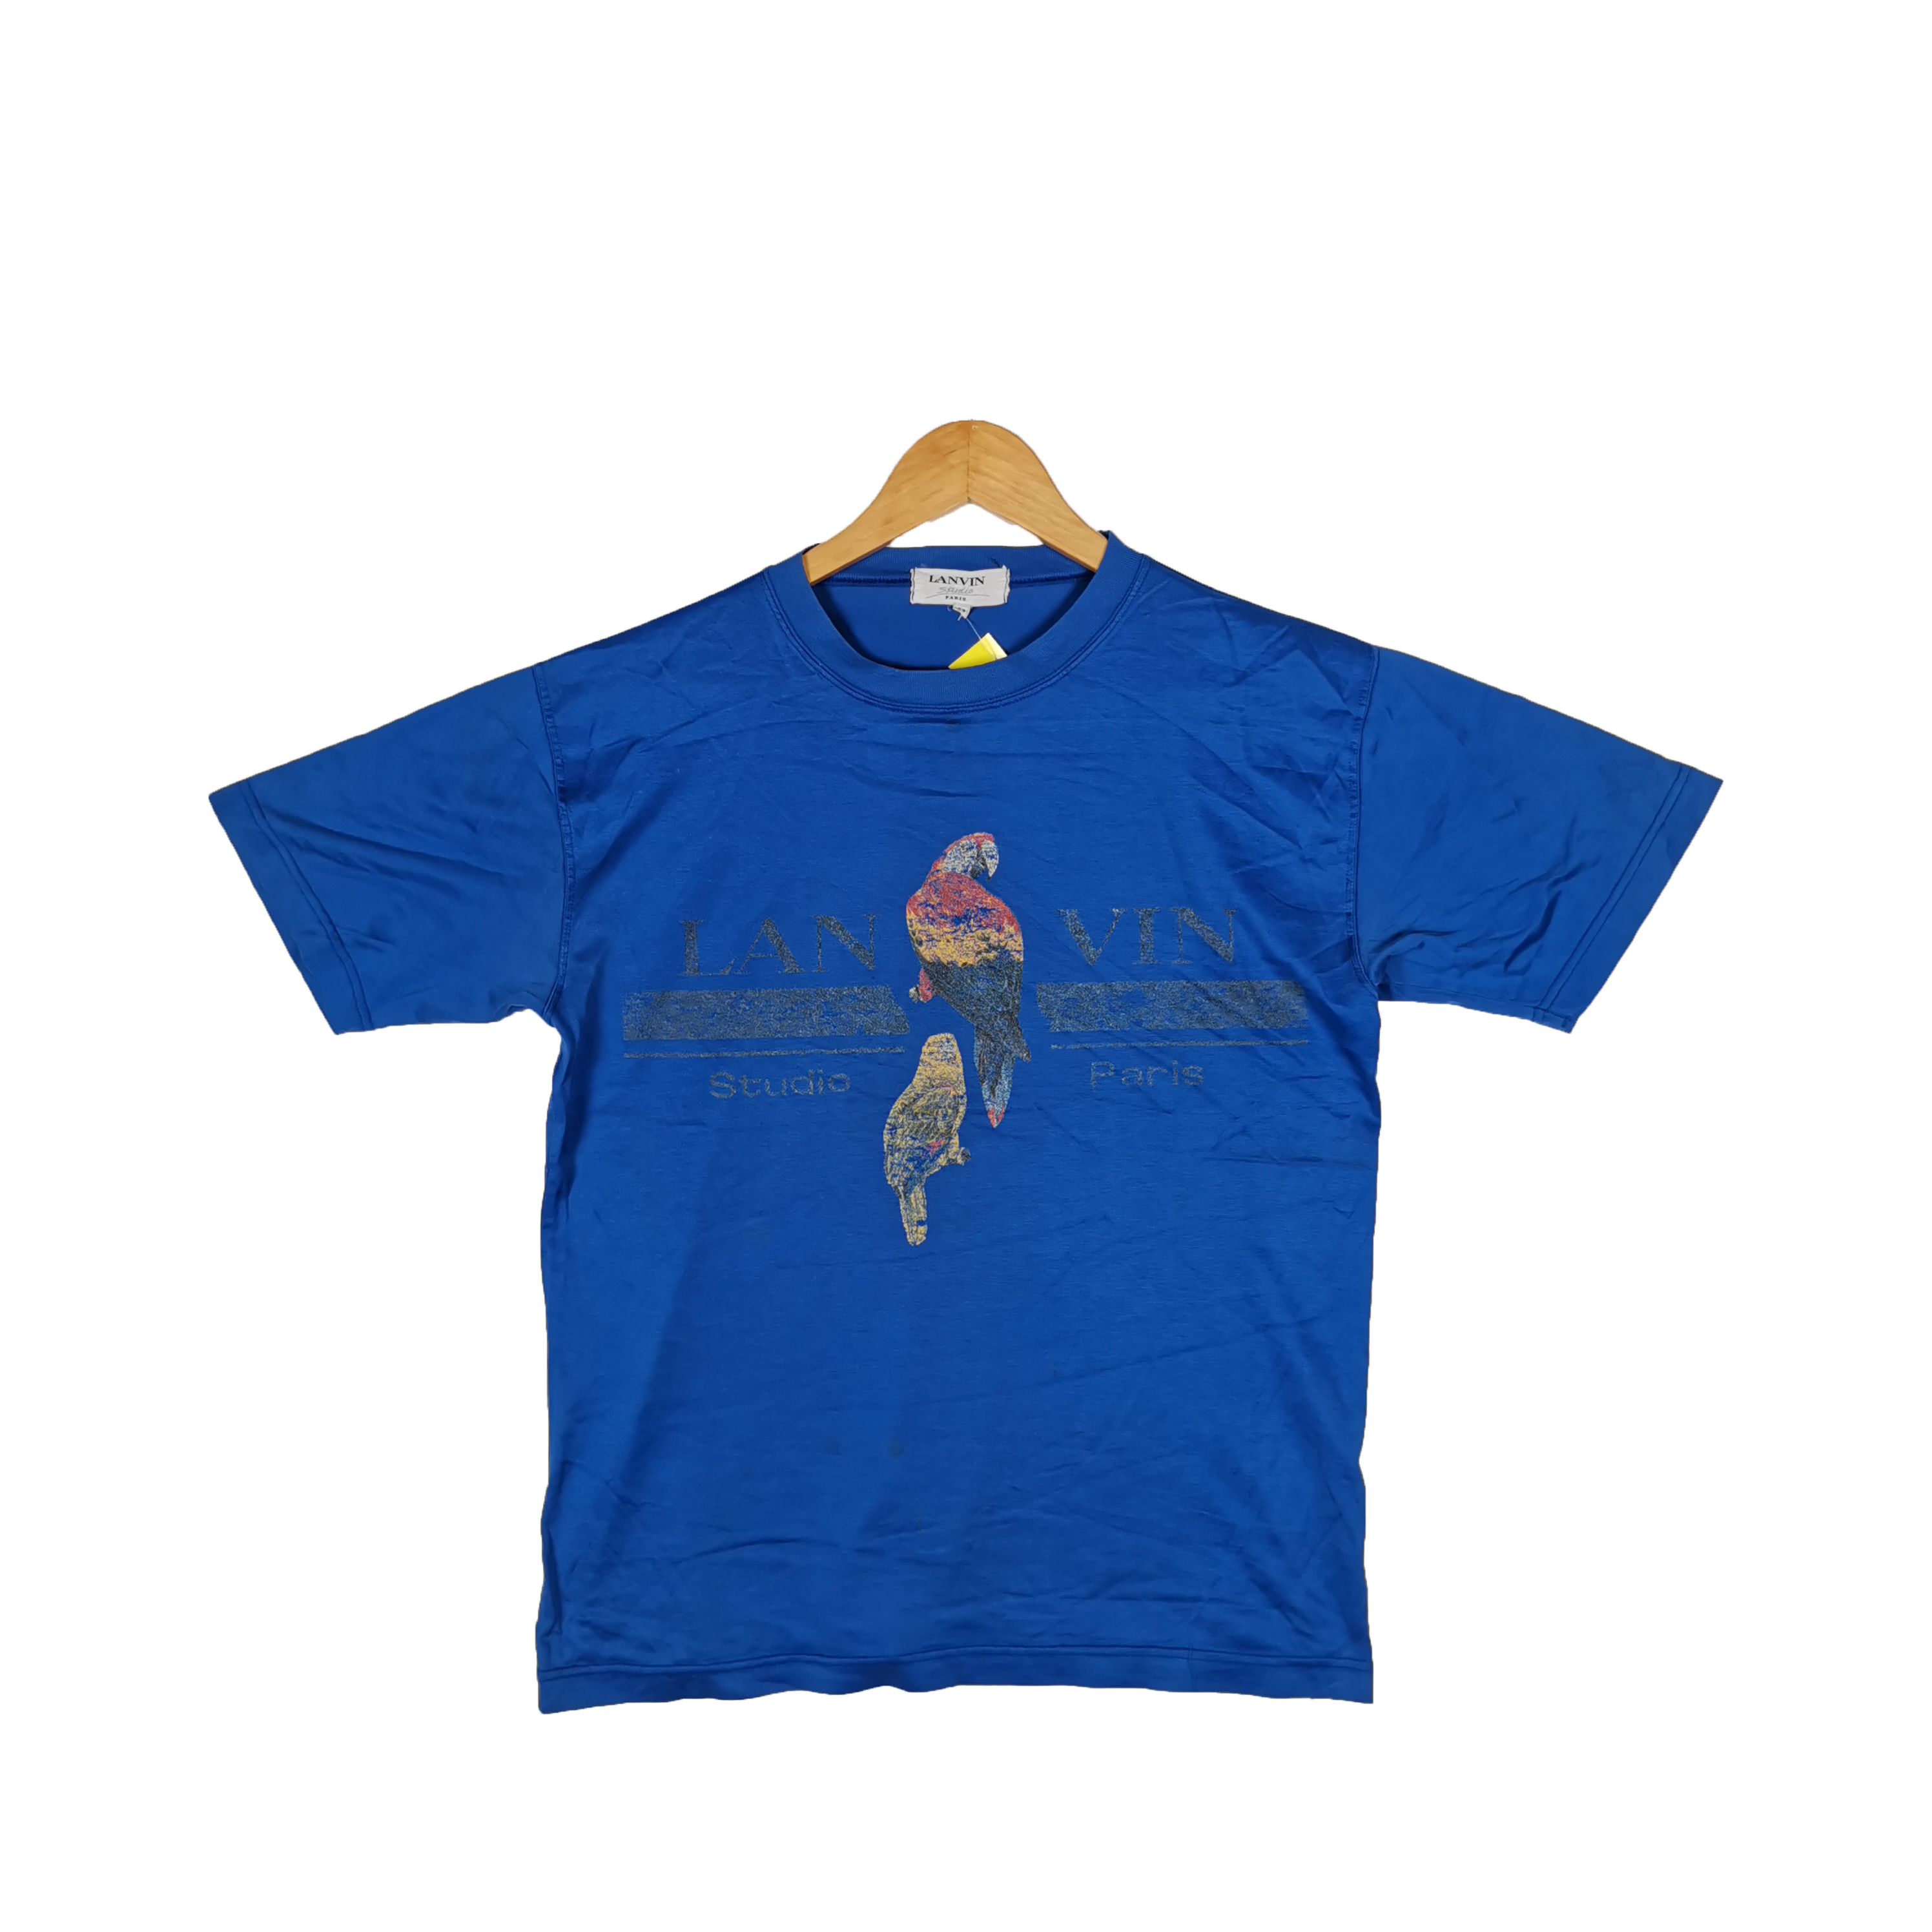 Vintage Lanvin T Shirt Parrot Vintage Lanvin Tee - 1